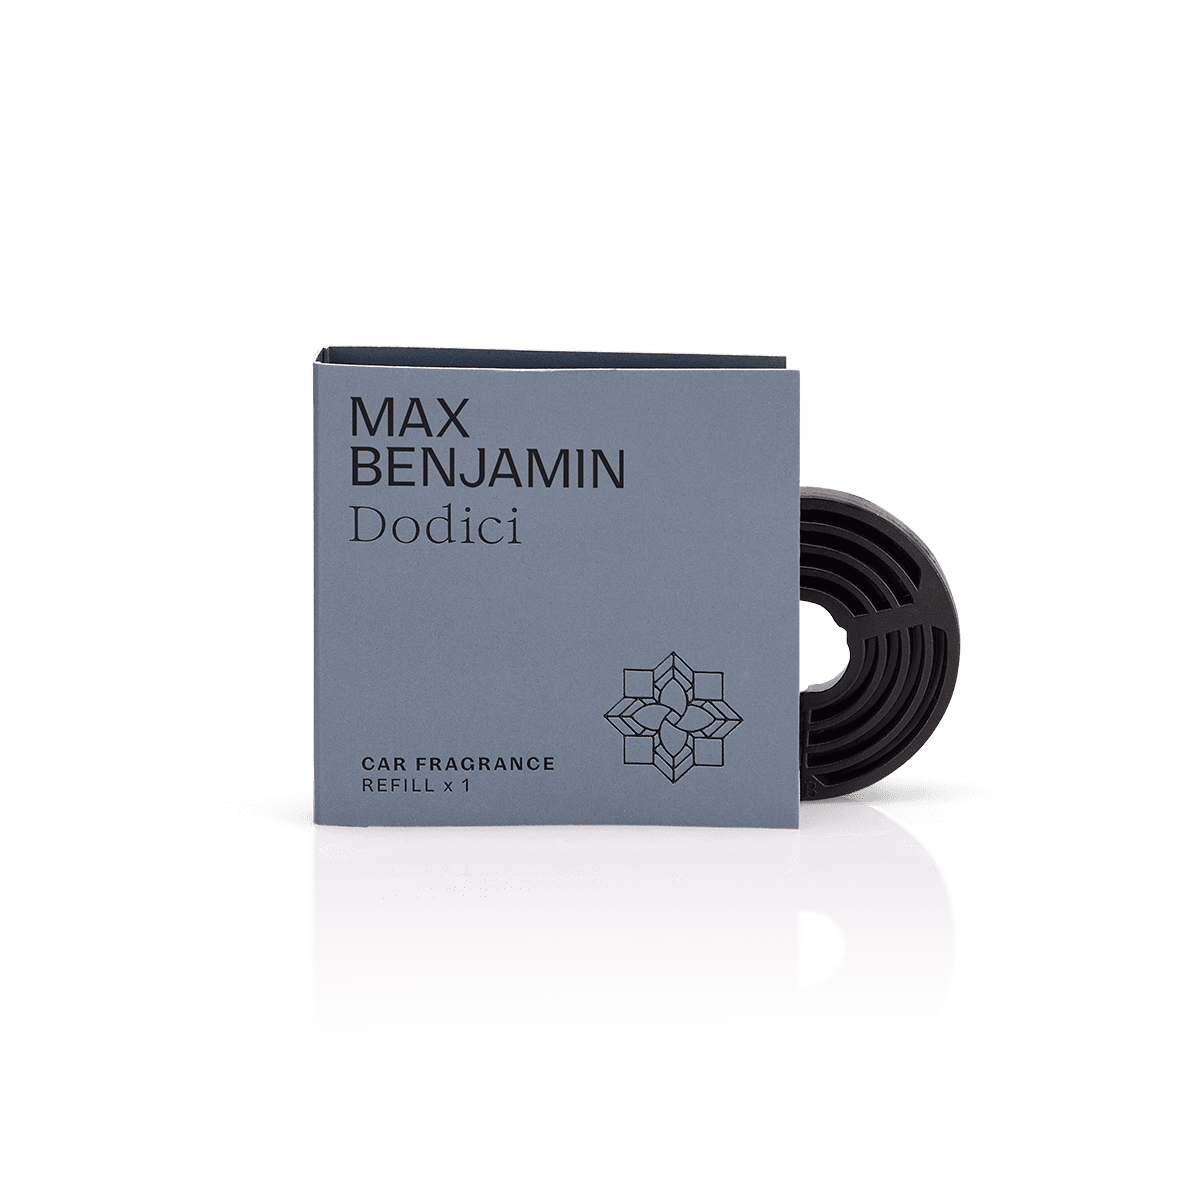 Max Benjamin Car Fragrance Refill - Dodici - Max Benjamin